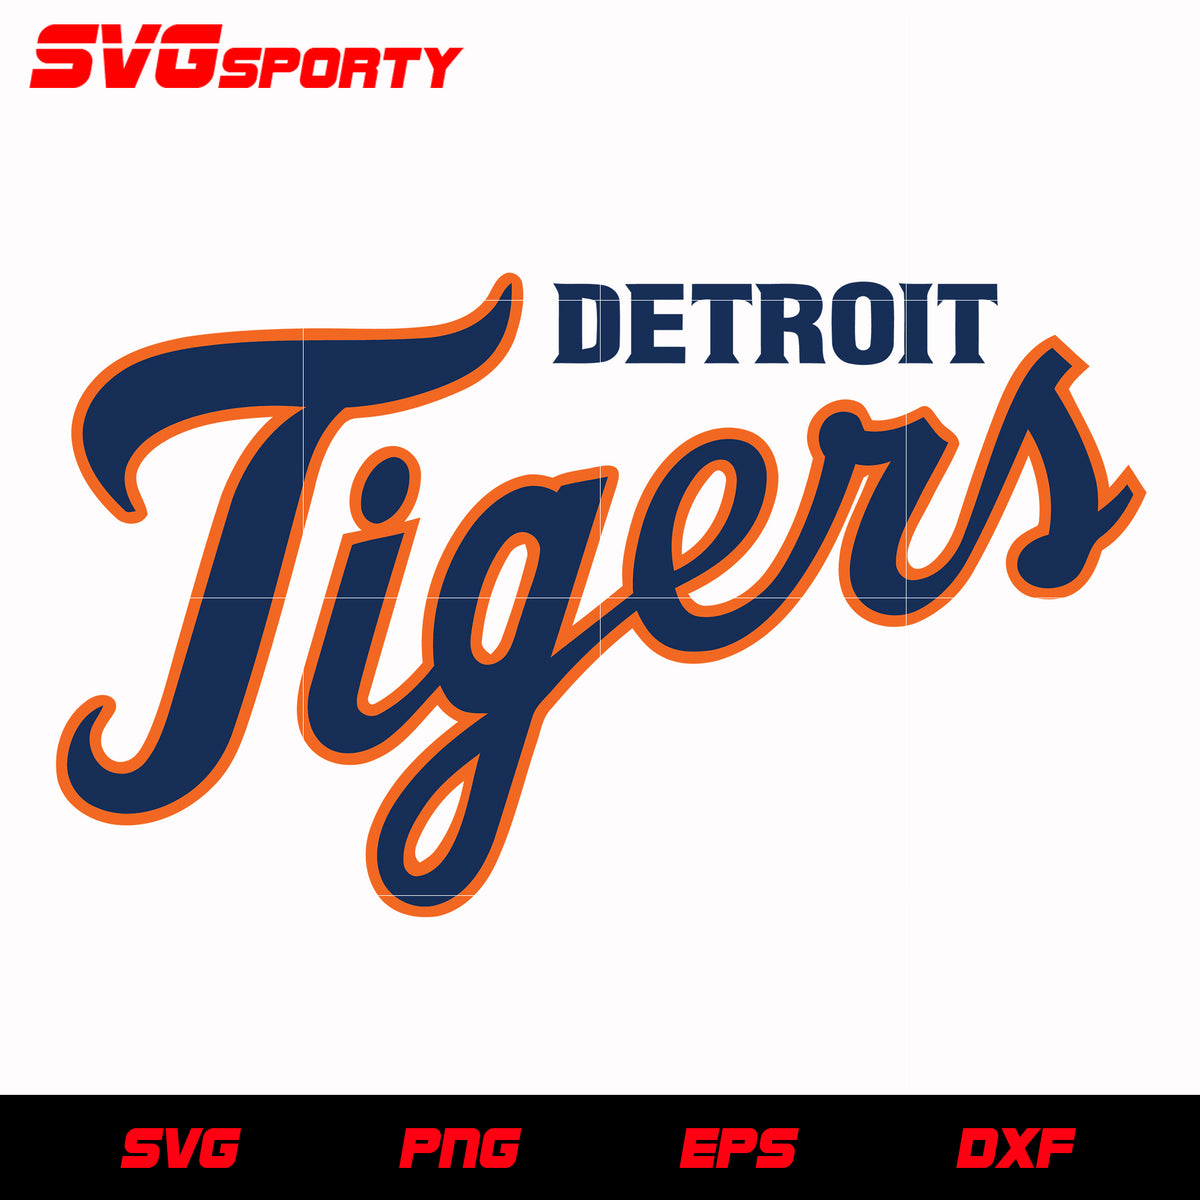 Detroit Tigers Text Logo svg, mlb svg, eps, dxf, png, digital file for –  SVG Sporty